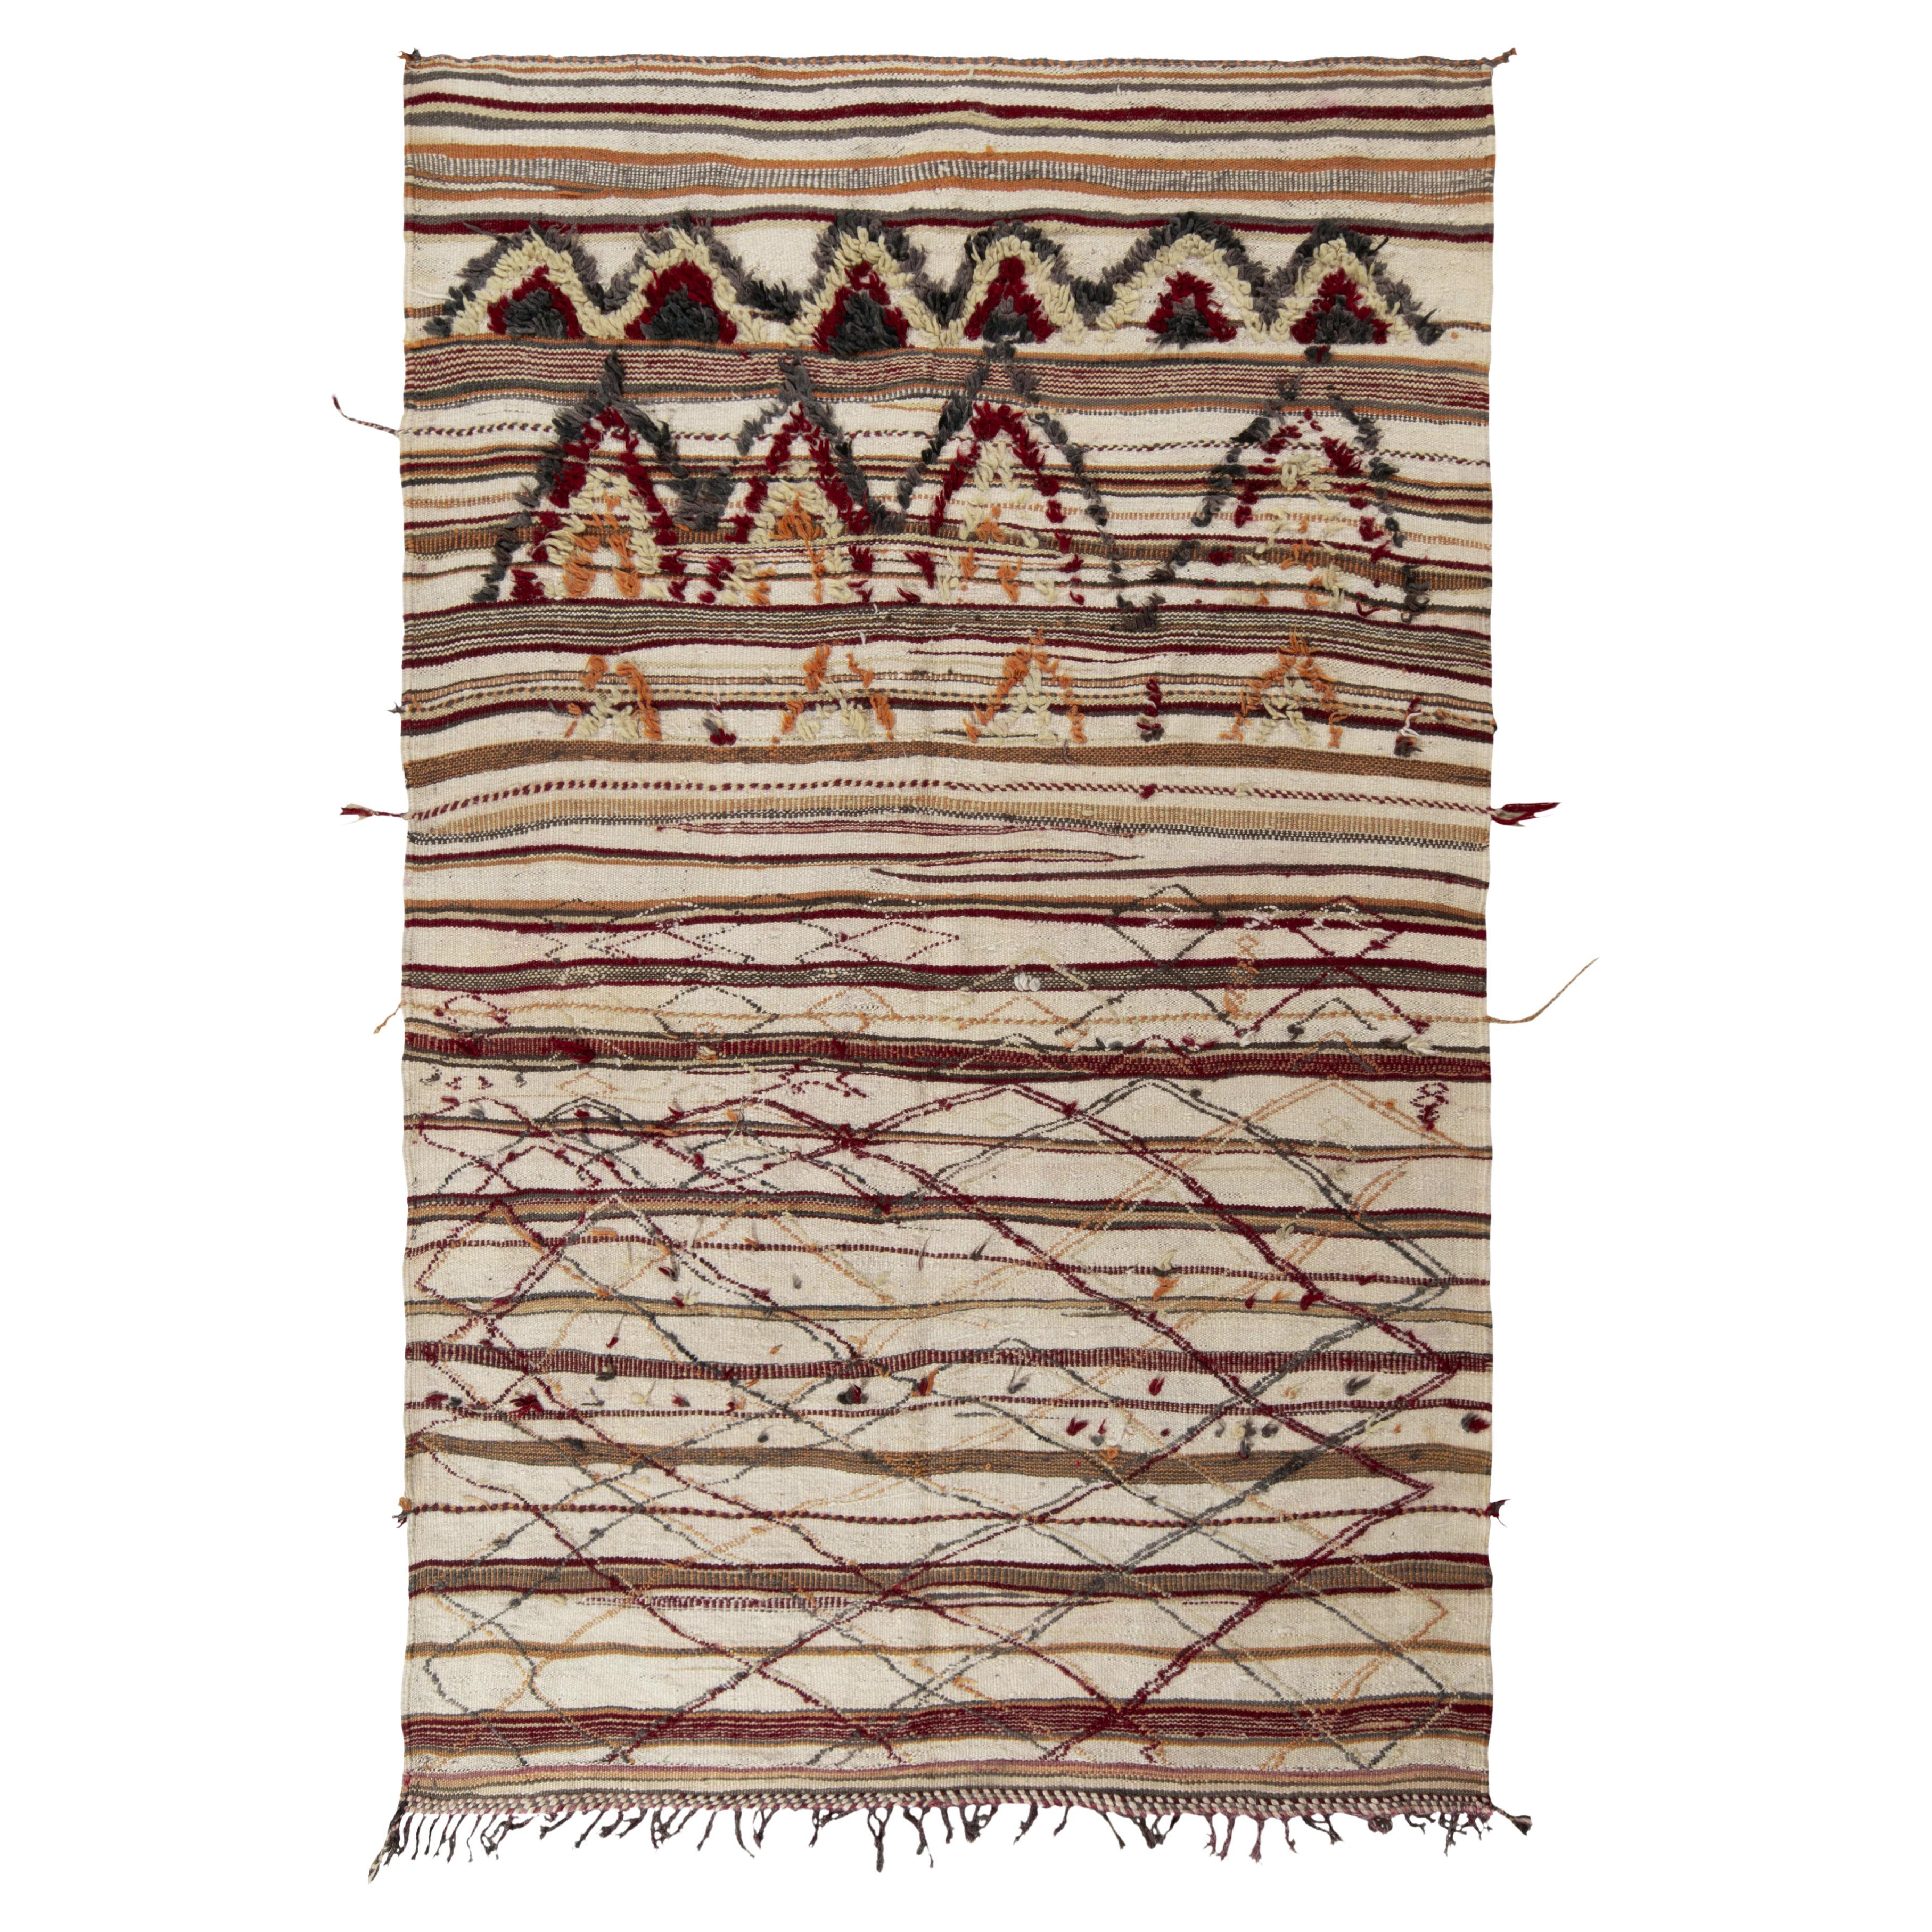 Vintage Berber rug in Beige-Brown, High-Low Geometric Pattern by Rug & Kilim For Sale